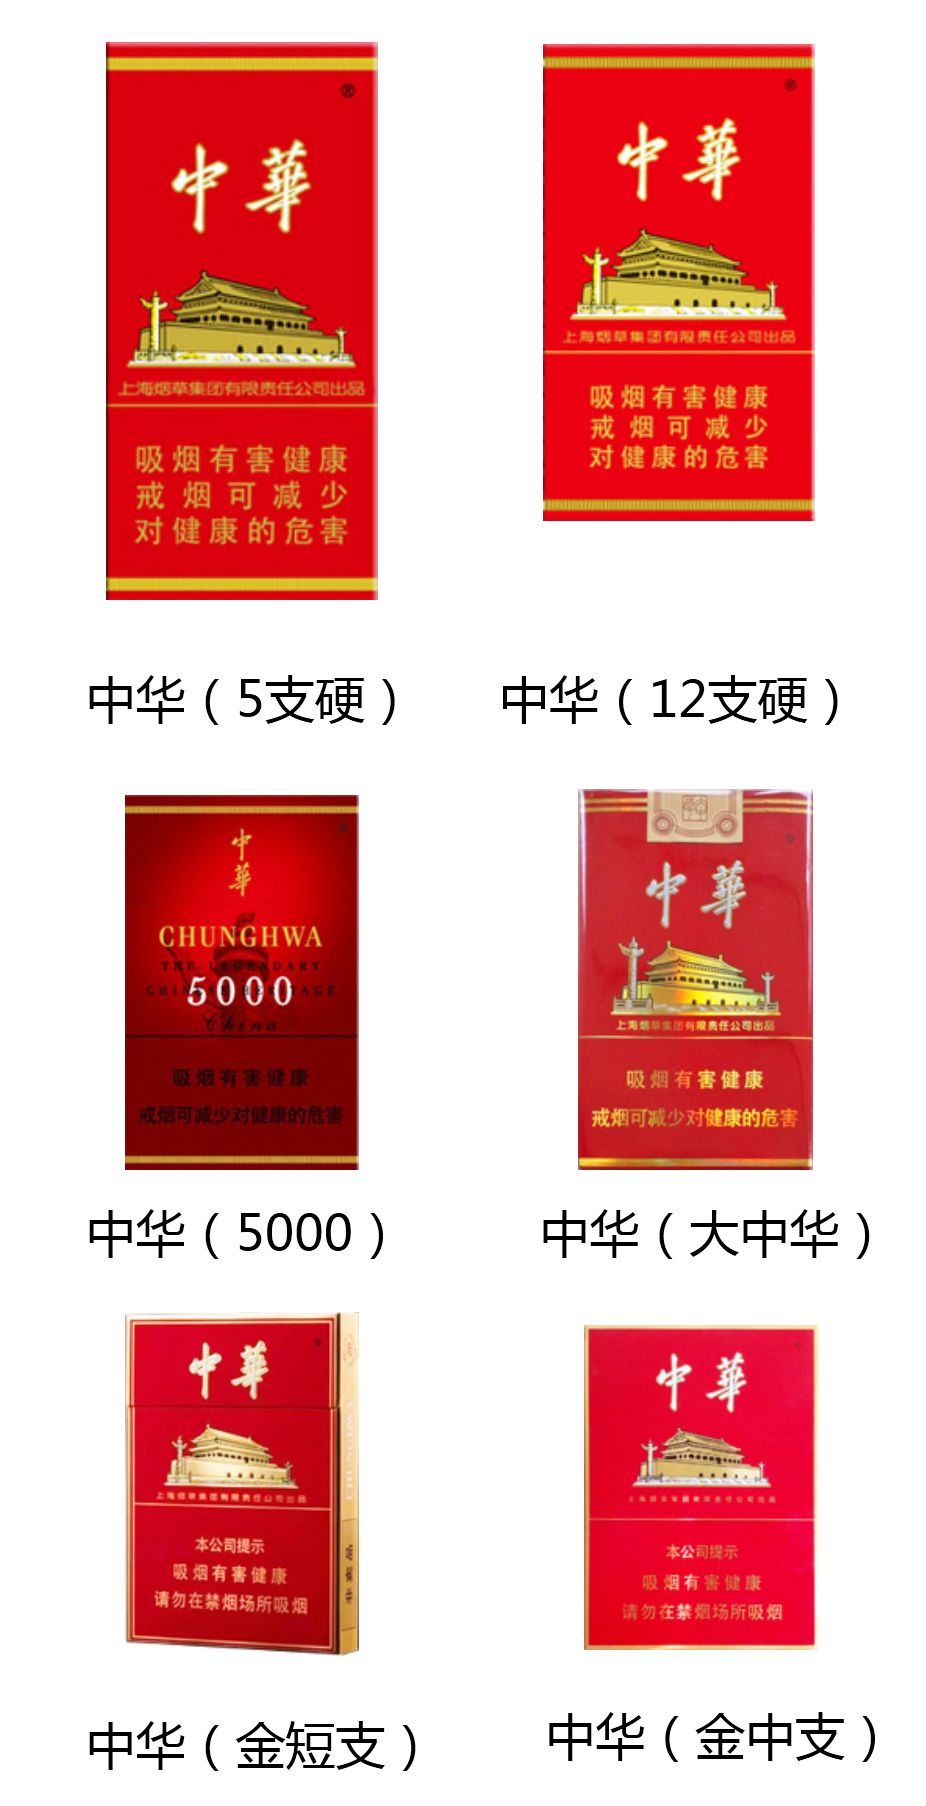 市场上只有这些中华香烟才是真烟